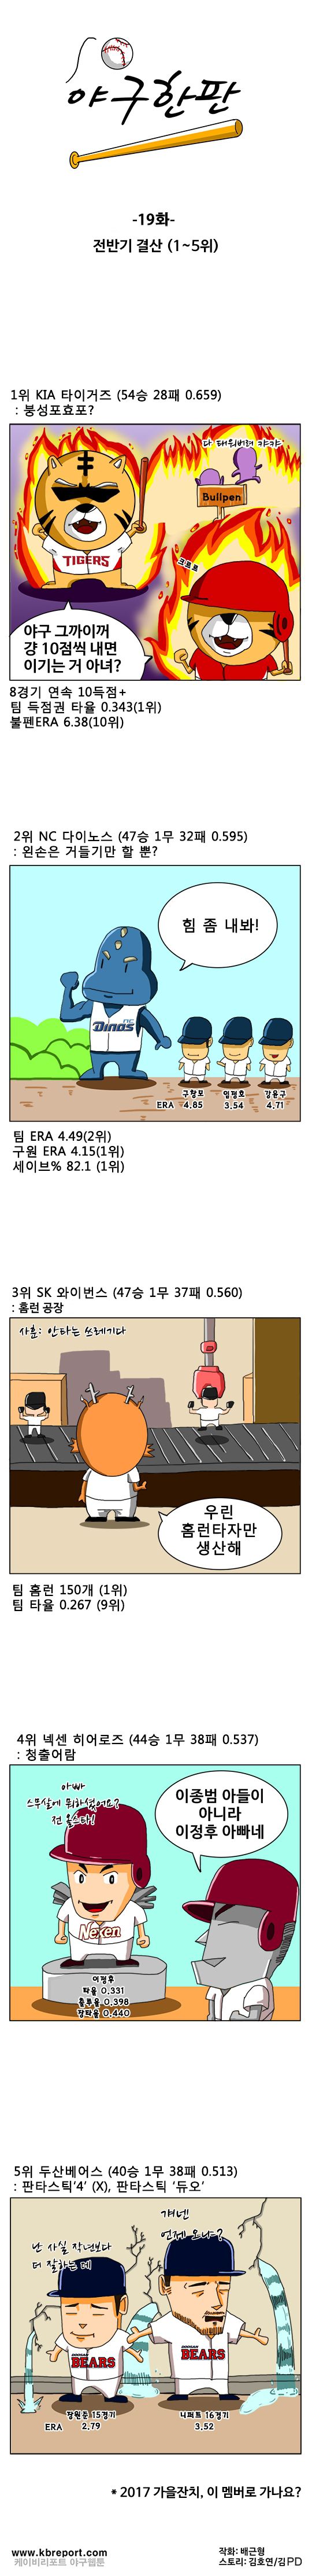 출처: [KBO카툰] '가을잔치' 참가팀, 이미 결정?